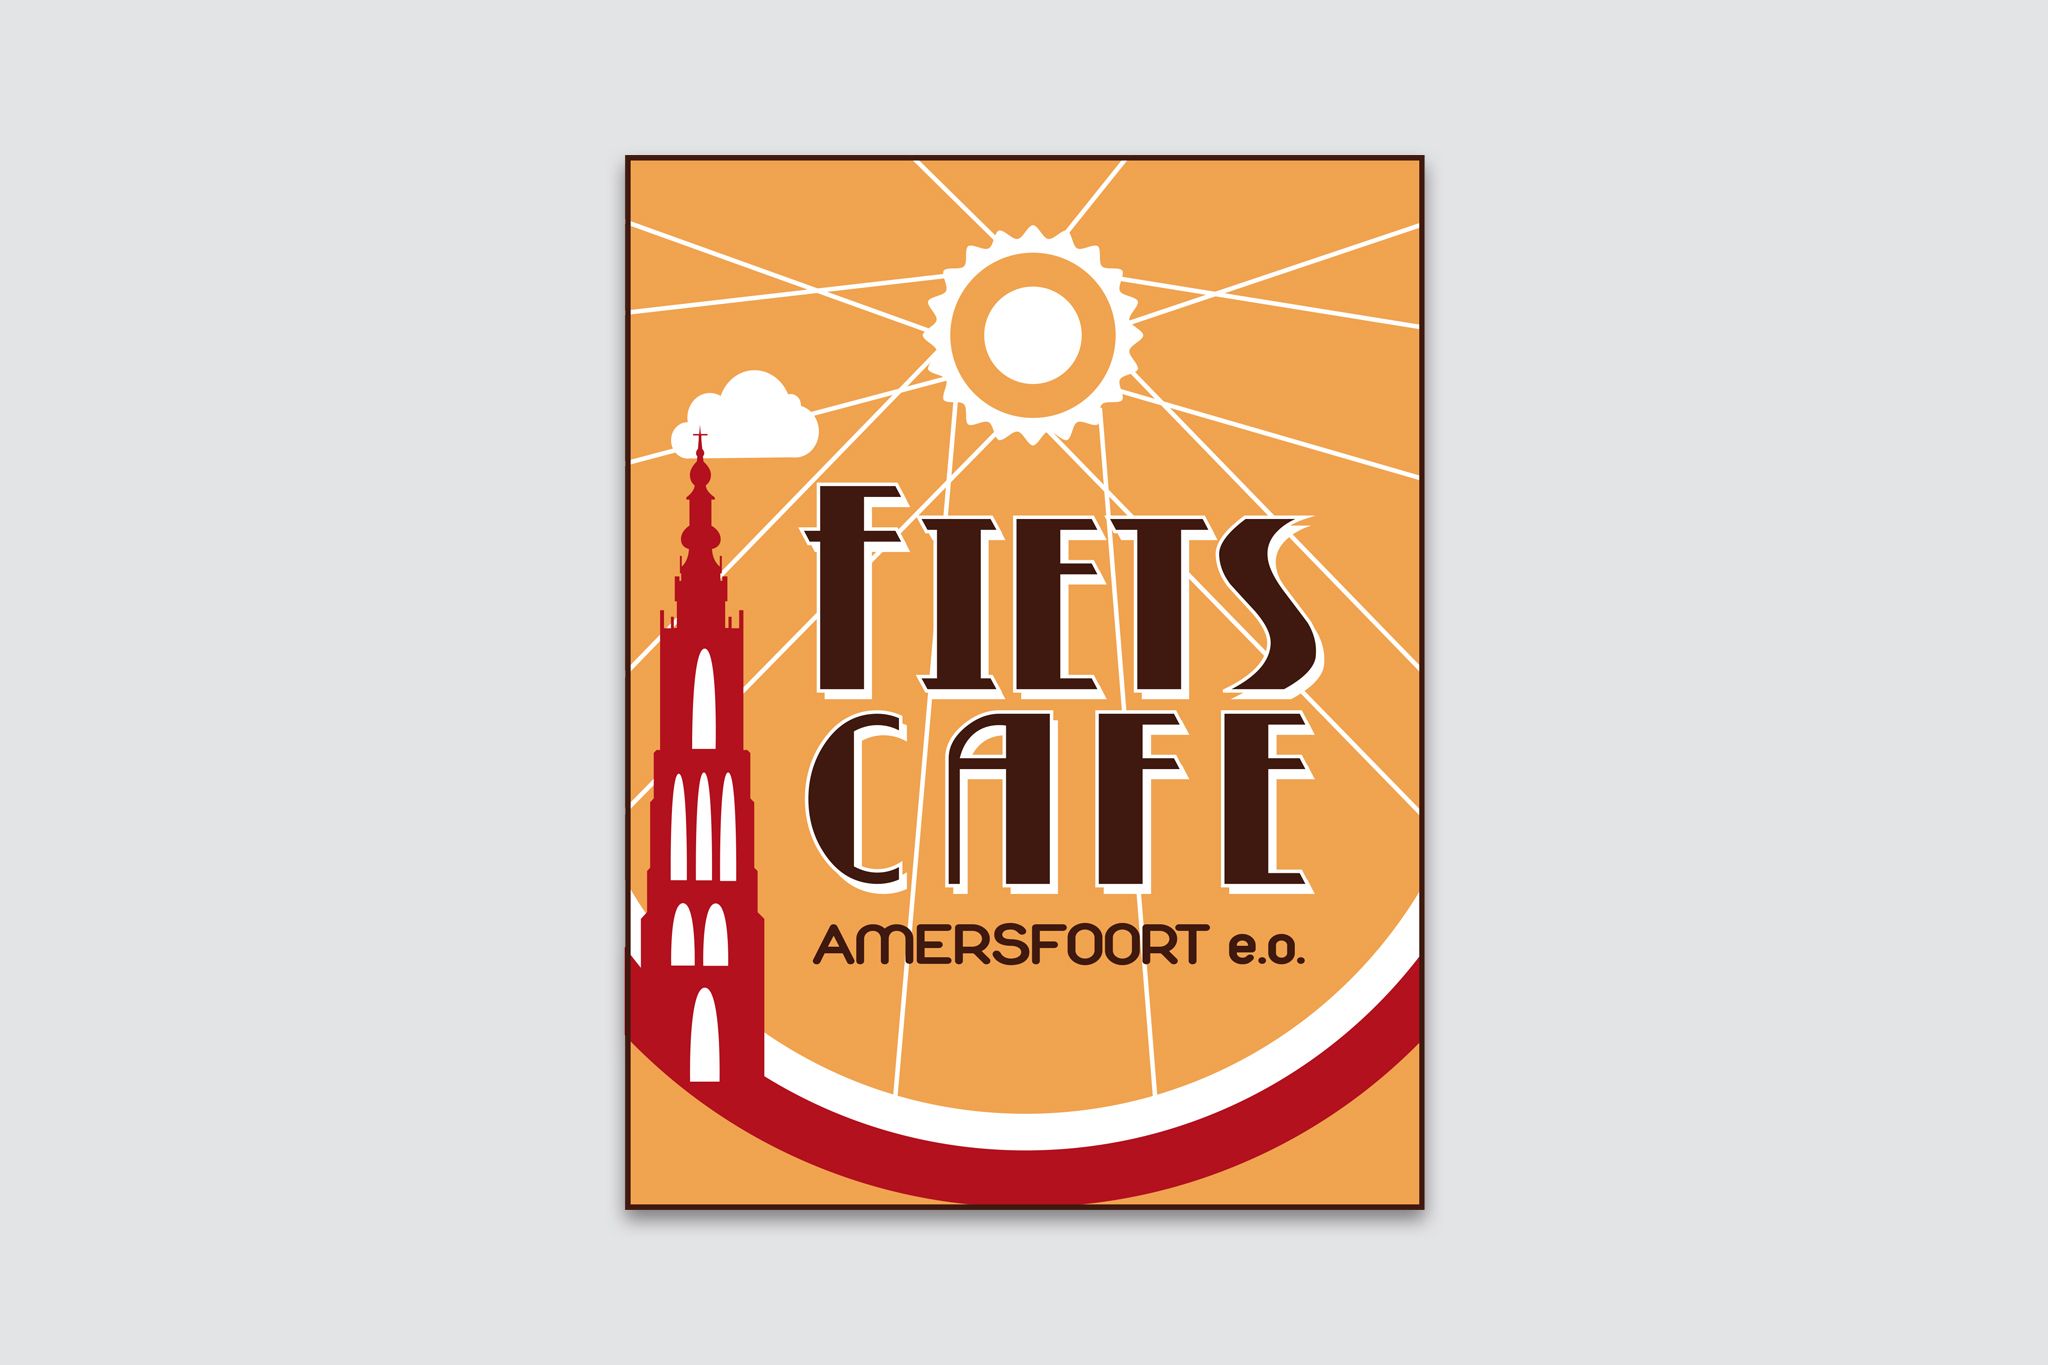 Fietscafe Amersfoort